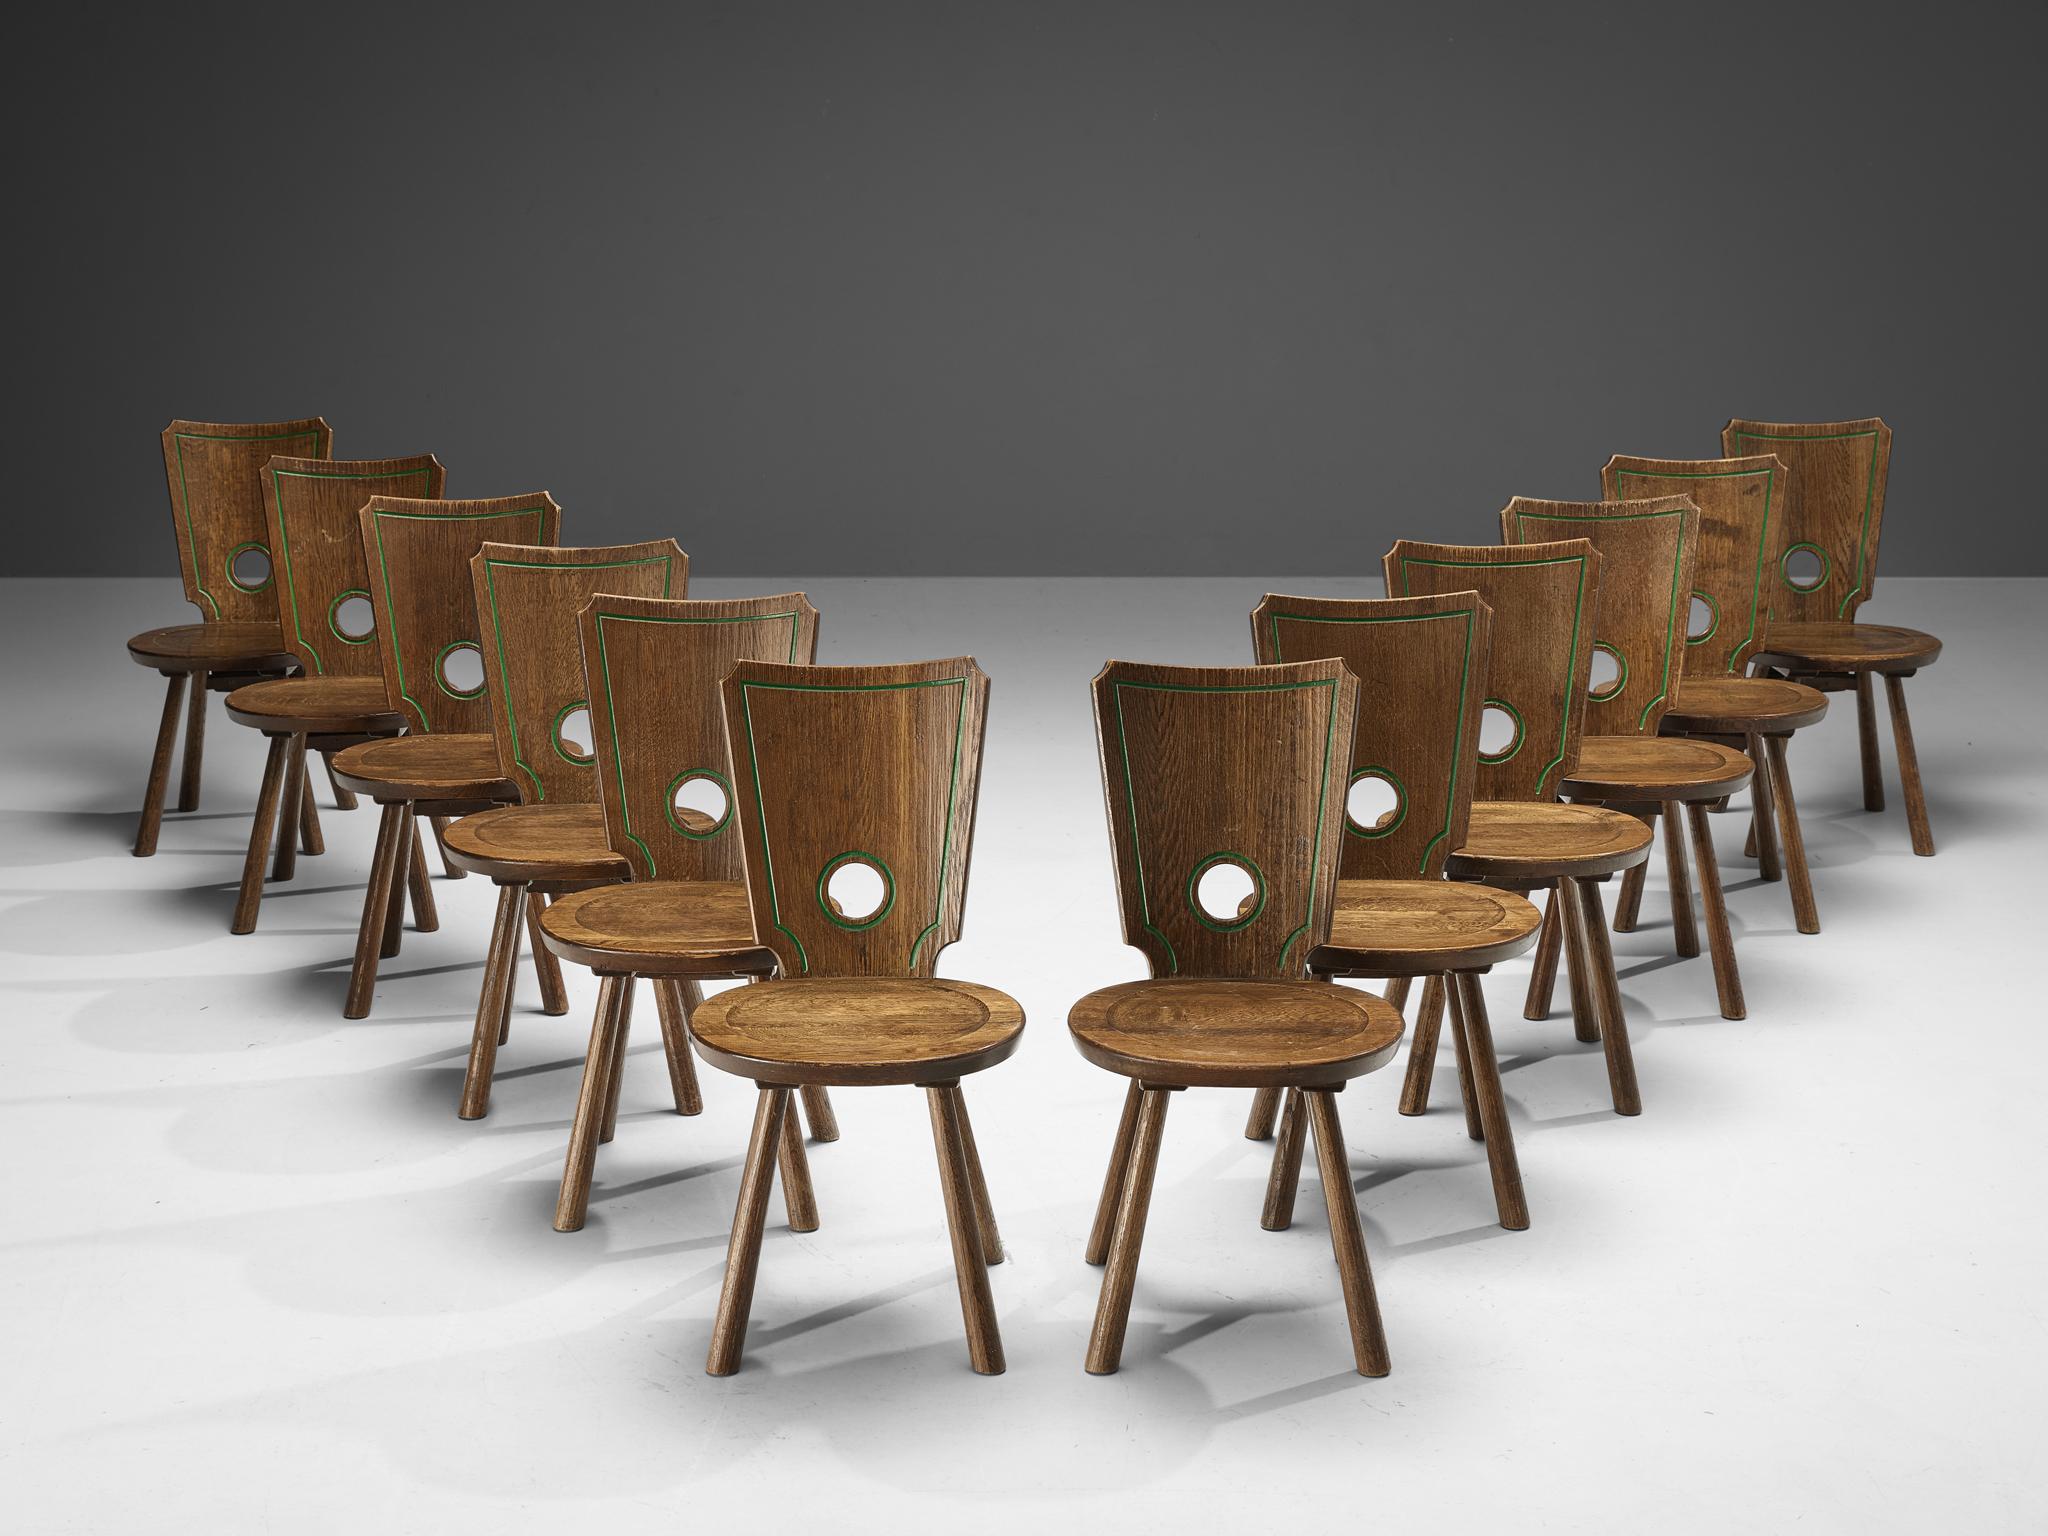 Grand ensemble de chaises de salle à manger, chêne teinté, laiton, métal, France, années 1960

Ensemble caractéristique de chaises de salle à manger françaises. Modérément décoré, l'espace arrondi du dossier joue un rôle visuel important en